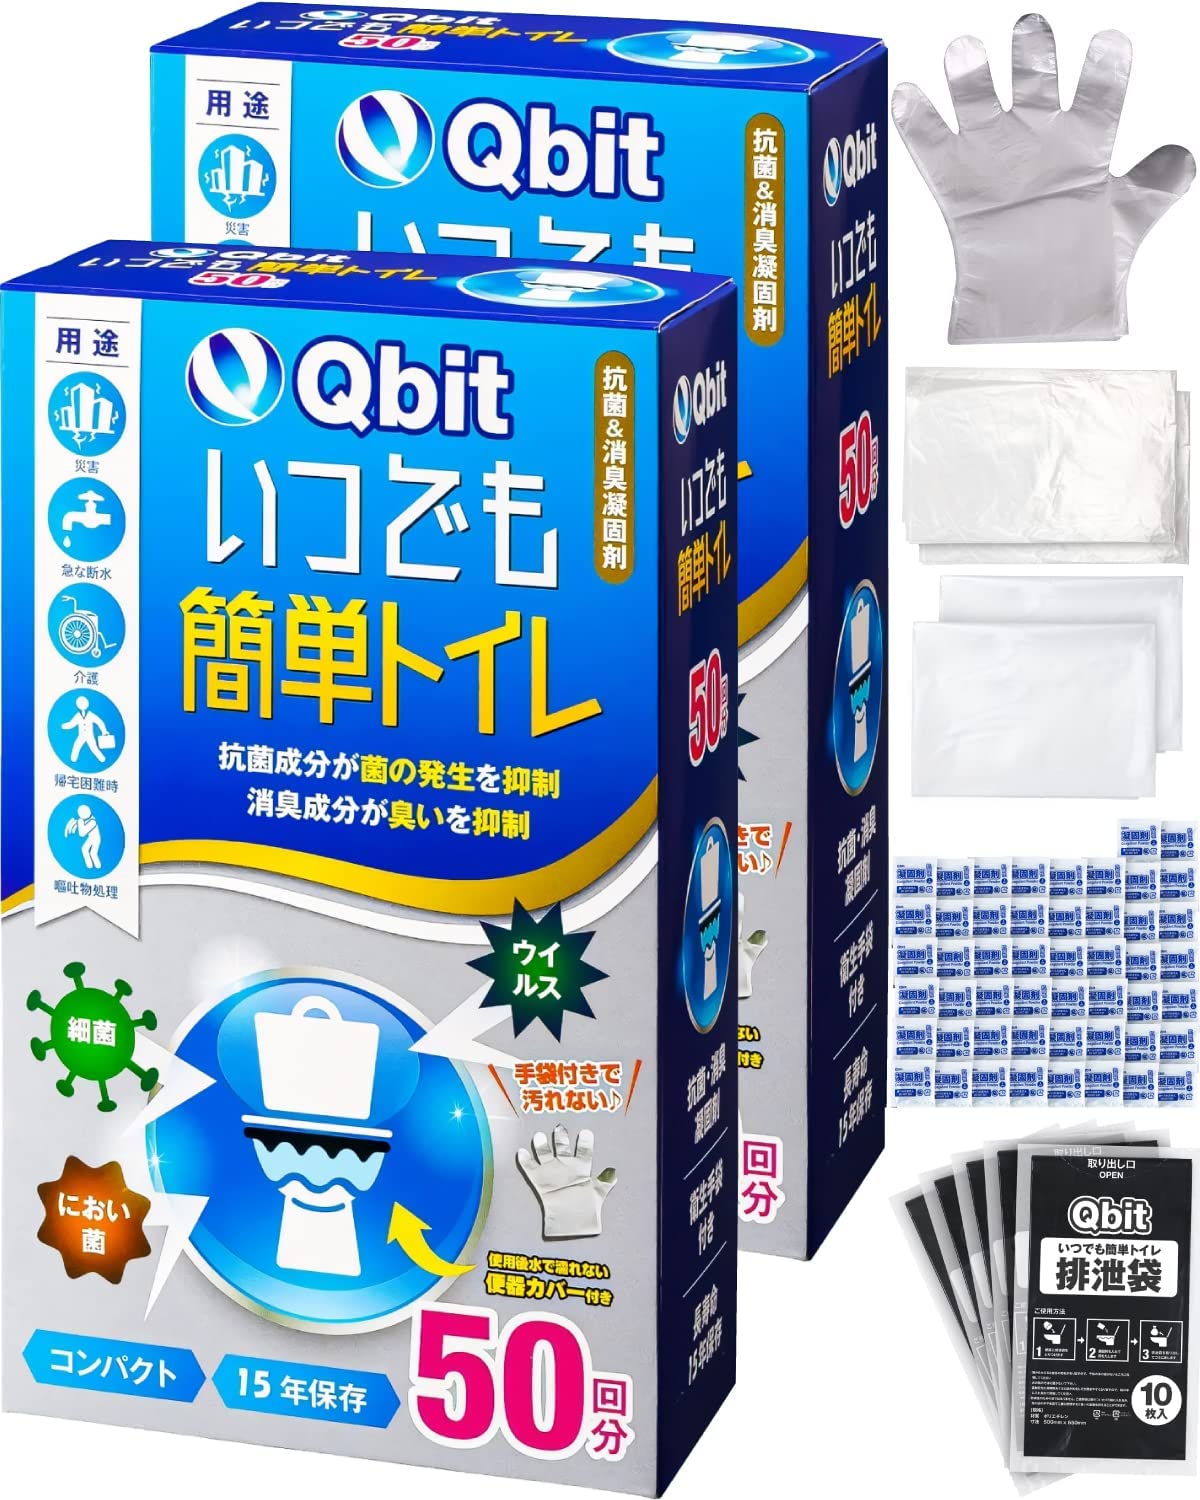 【日本代購】Qbit 防災 露營 簡易廁所 100次量